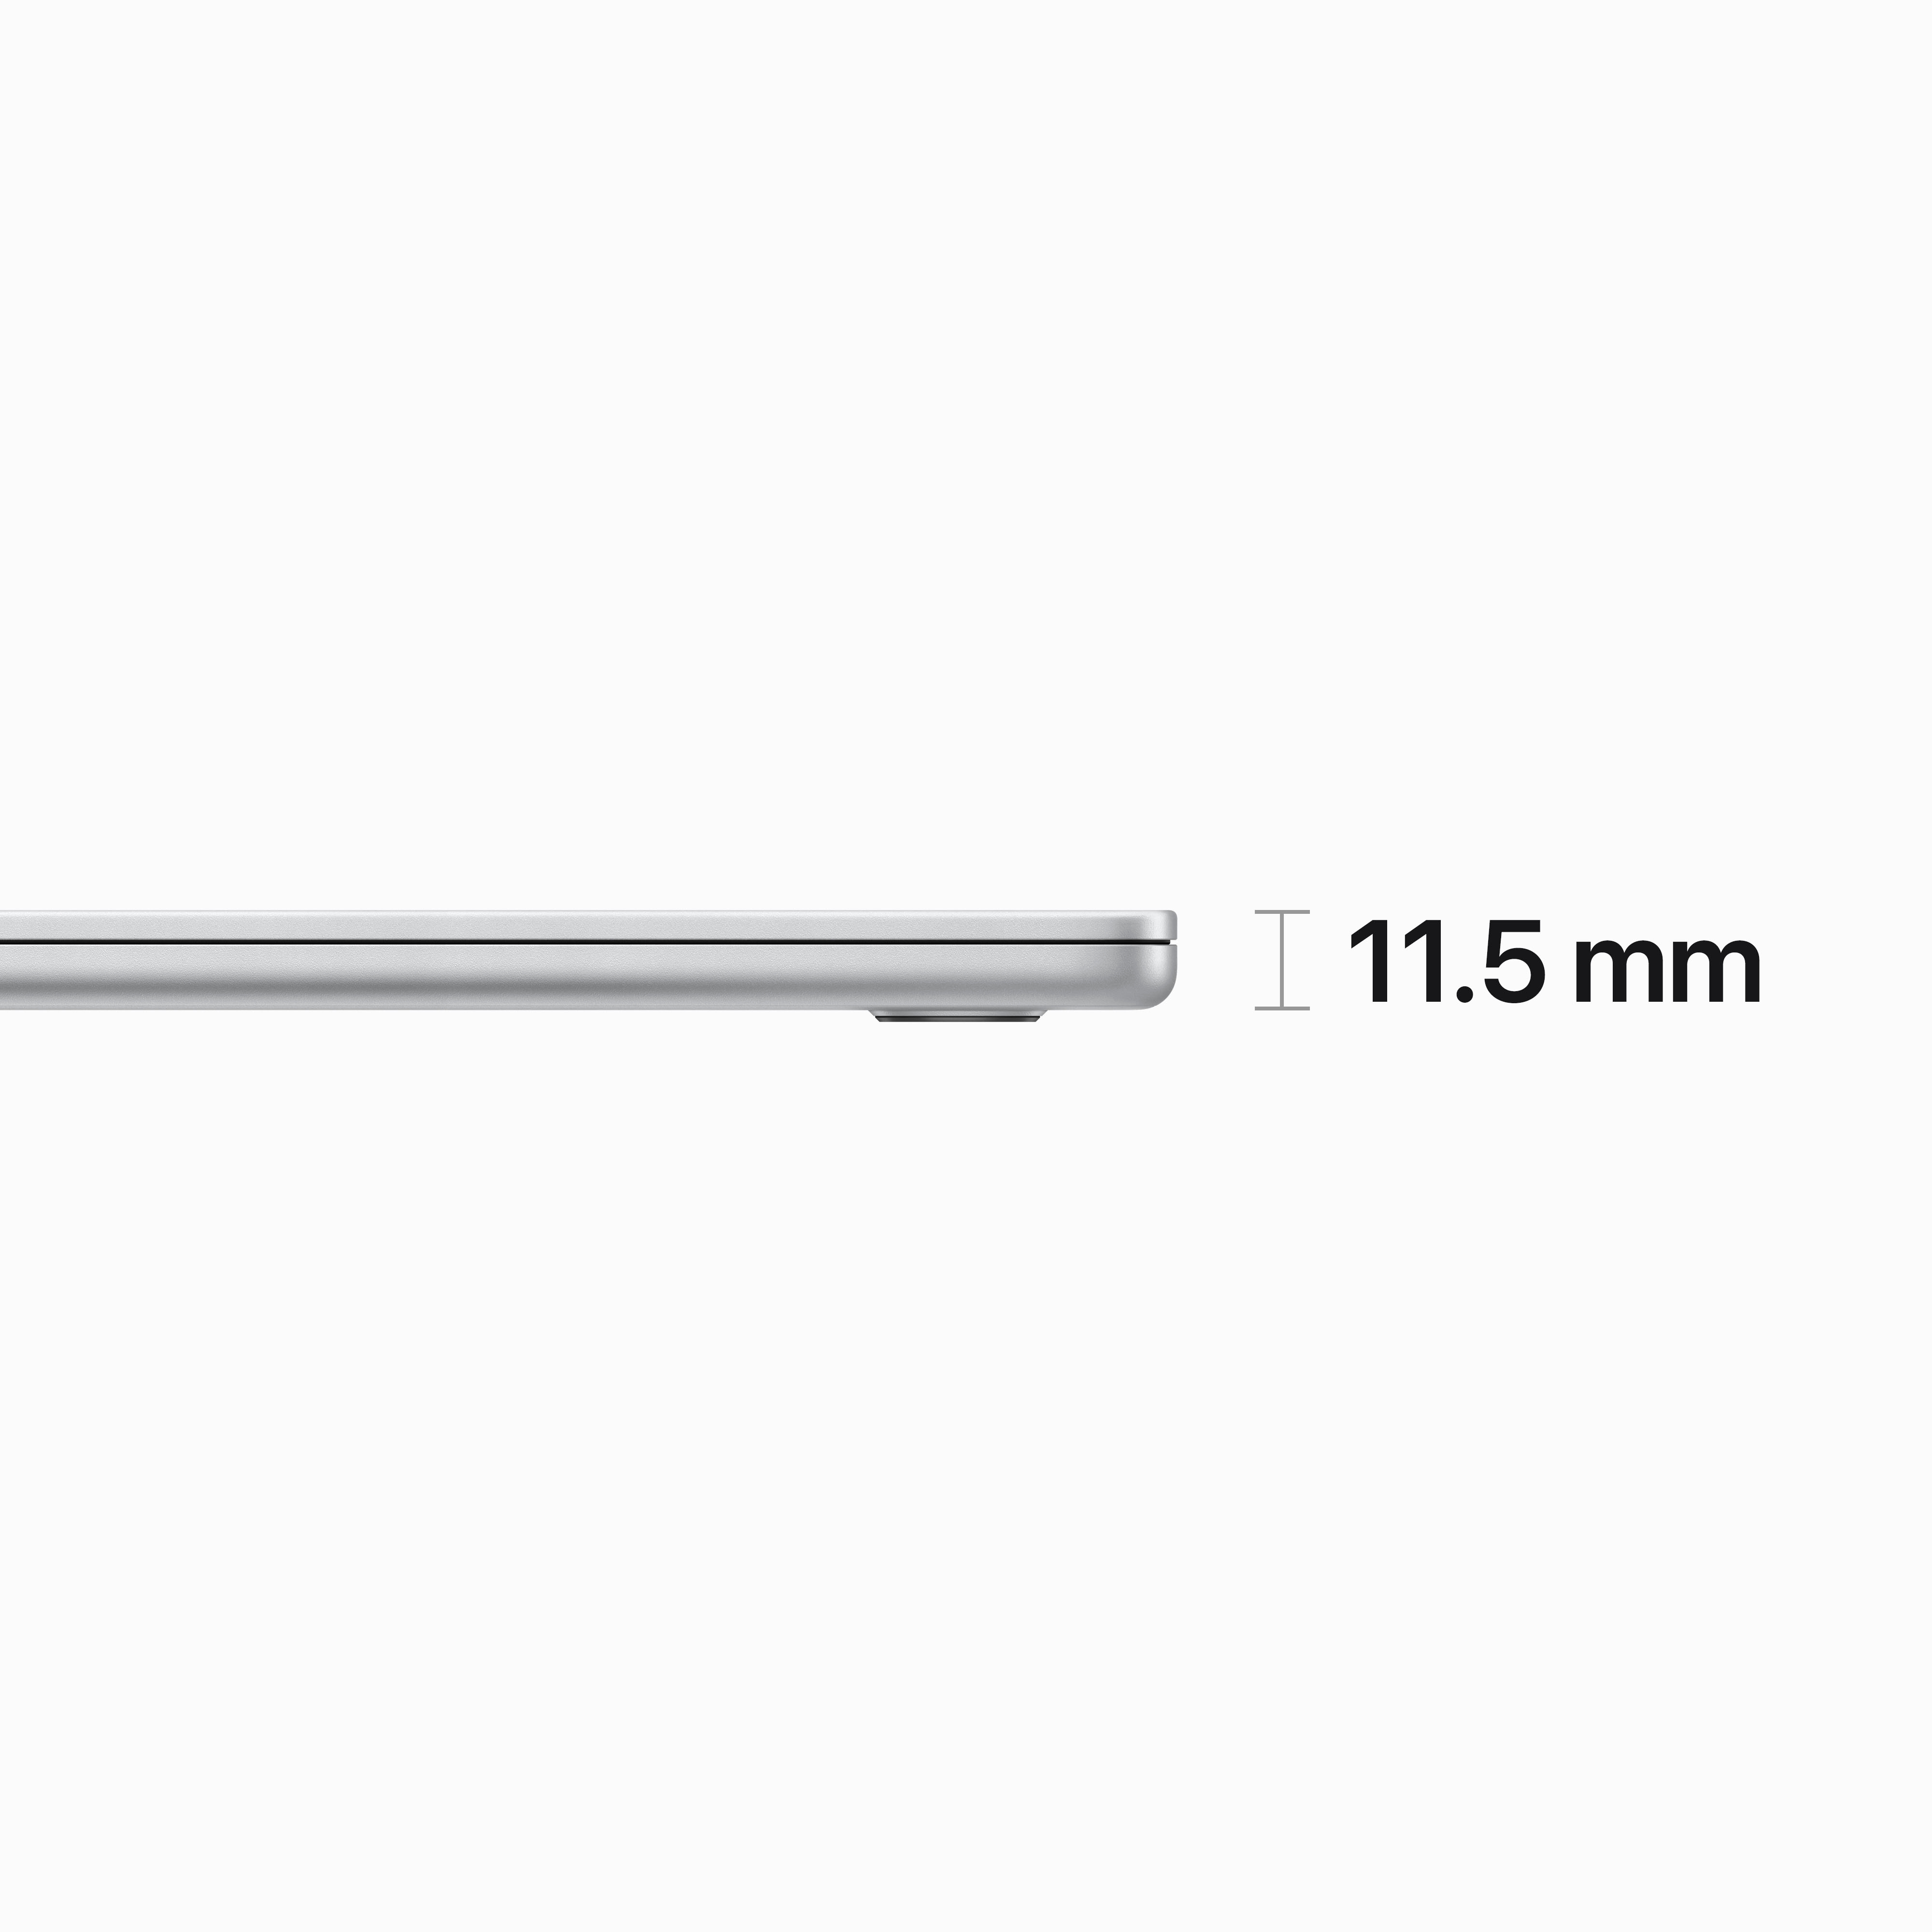 Apple MacBook Air 15\